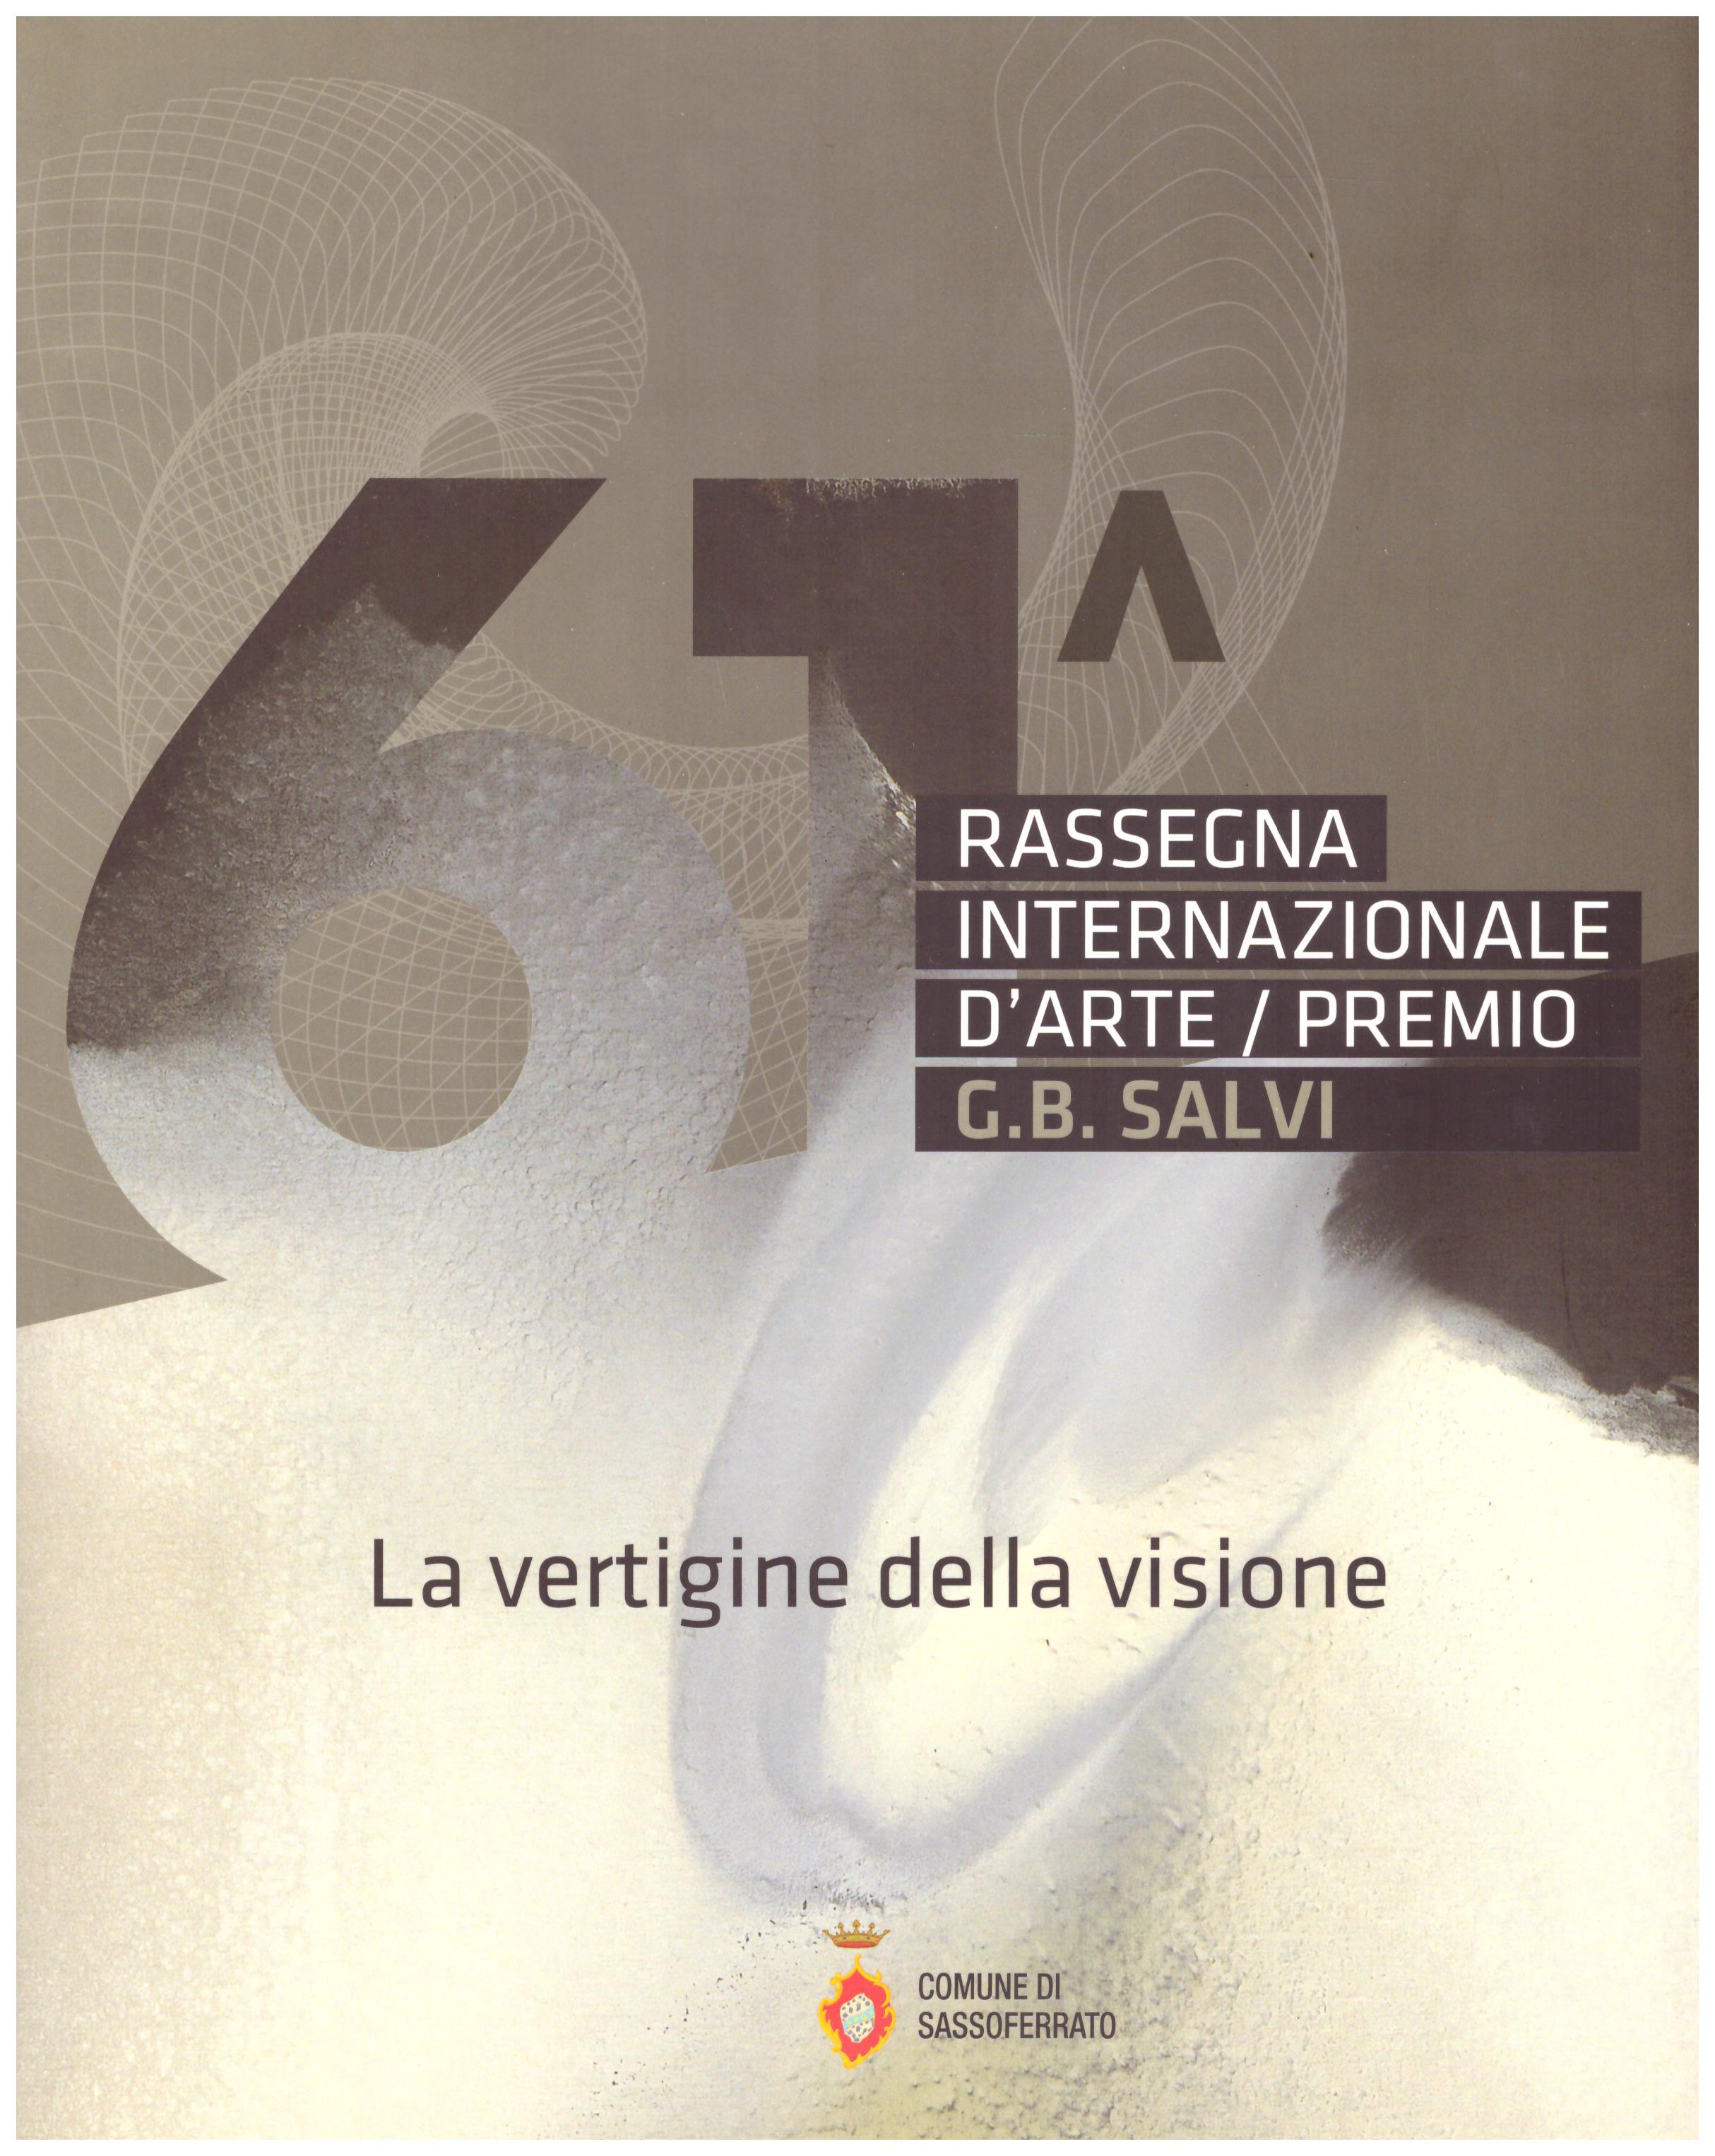 Titolo: Rassegna internazionale d'arte, premio G. B. Salvi, La vertigine della visione Autore : AA.VV.  Editore: arti grafiche stibu, 2011